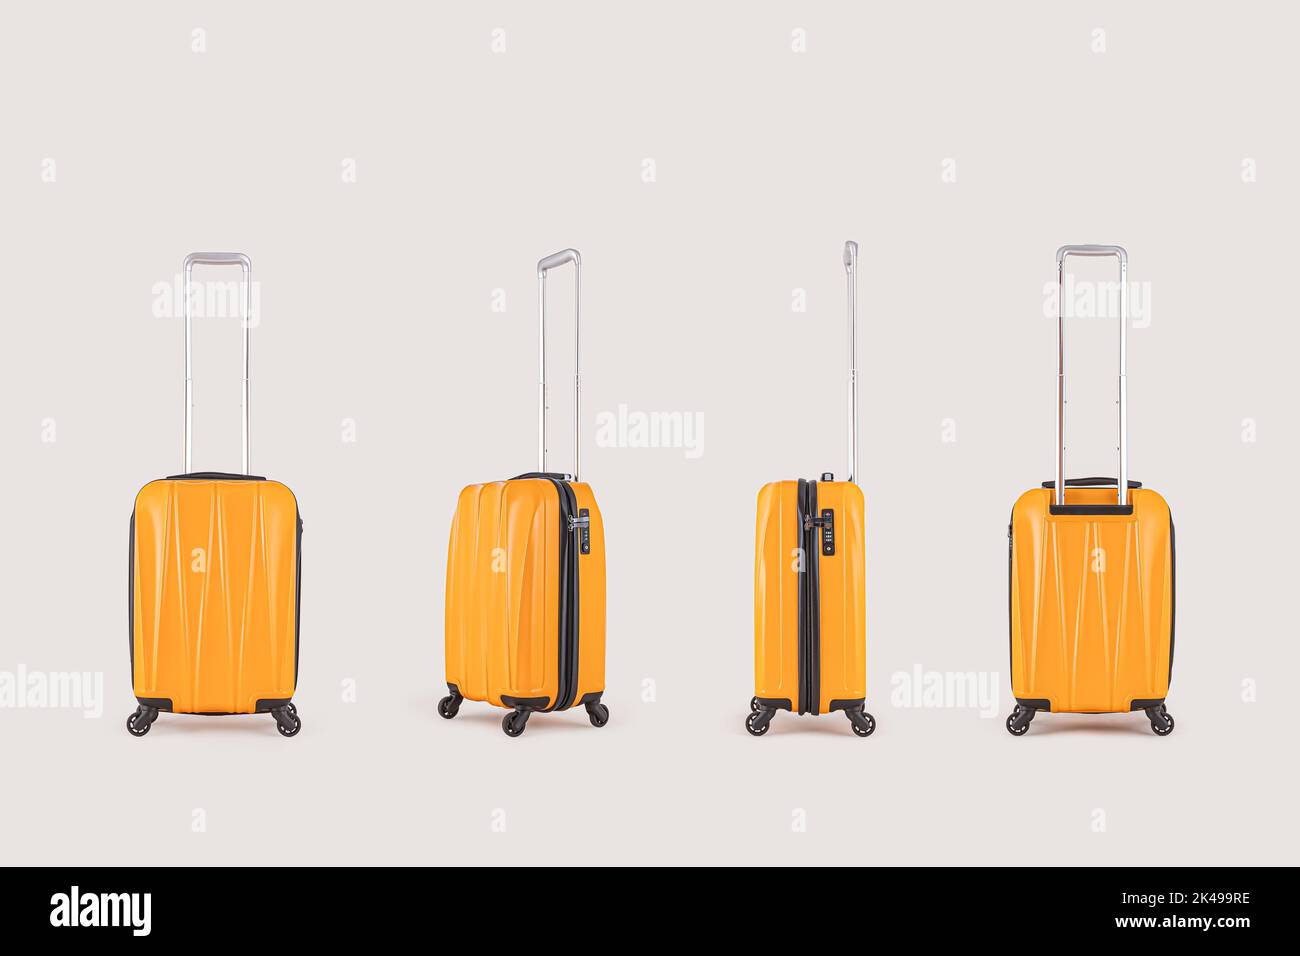 Set up of stylish yellow suitcases isolated on white background Stock Photo